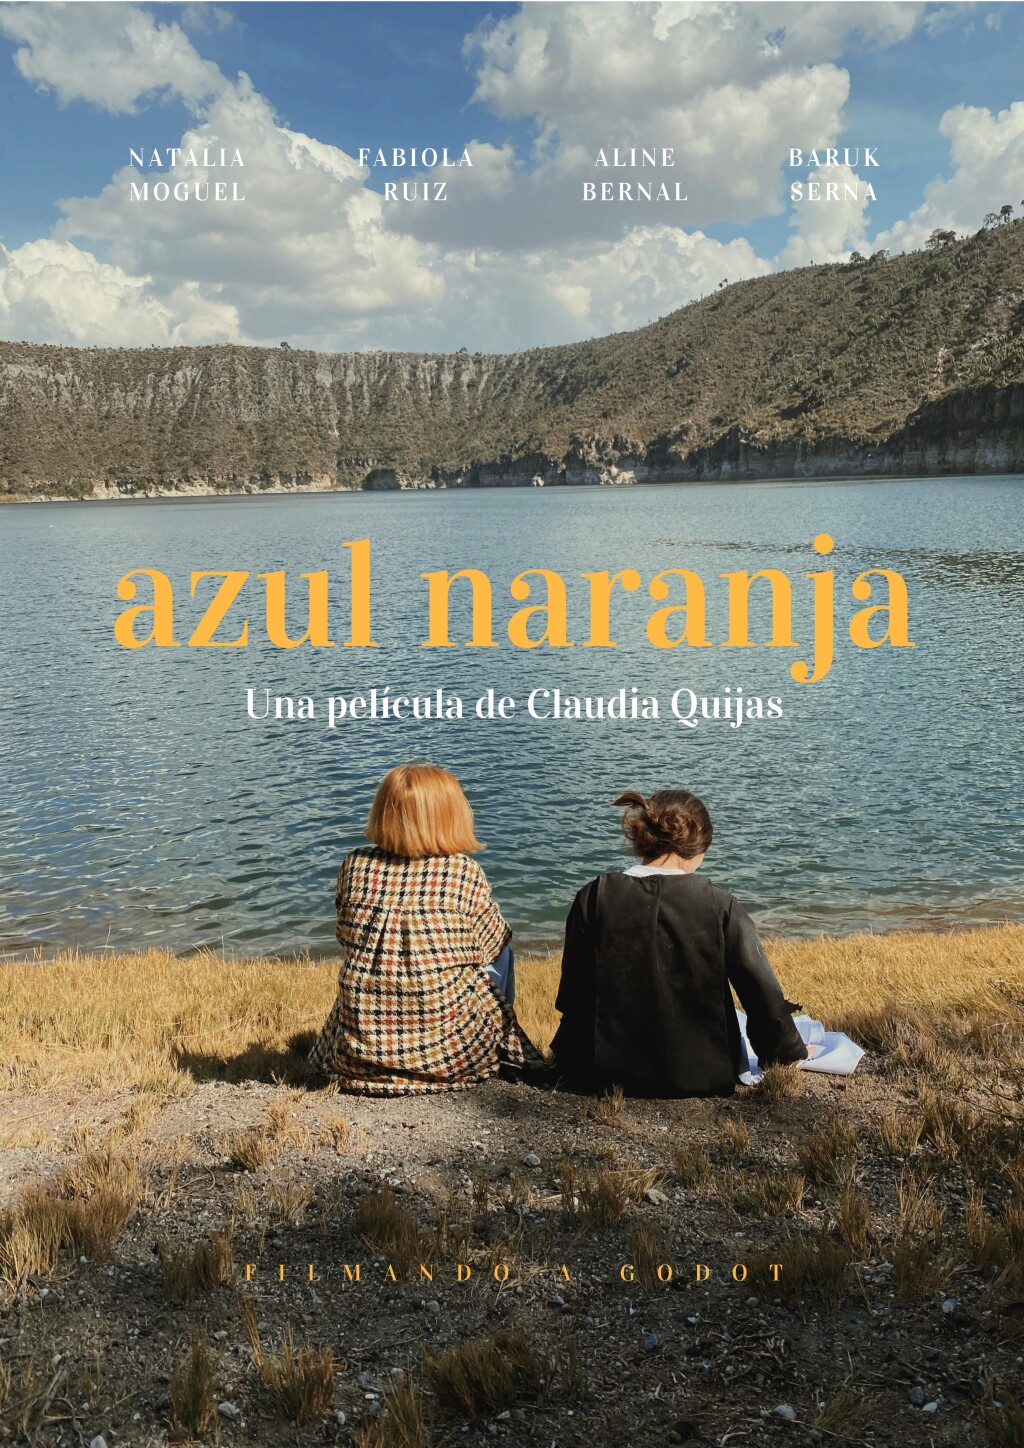 Filmposter for Azul Naranja